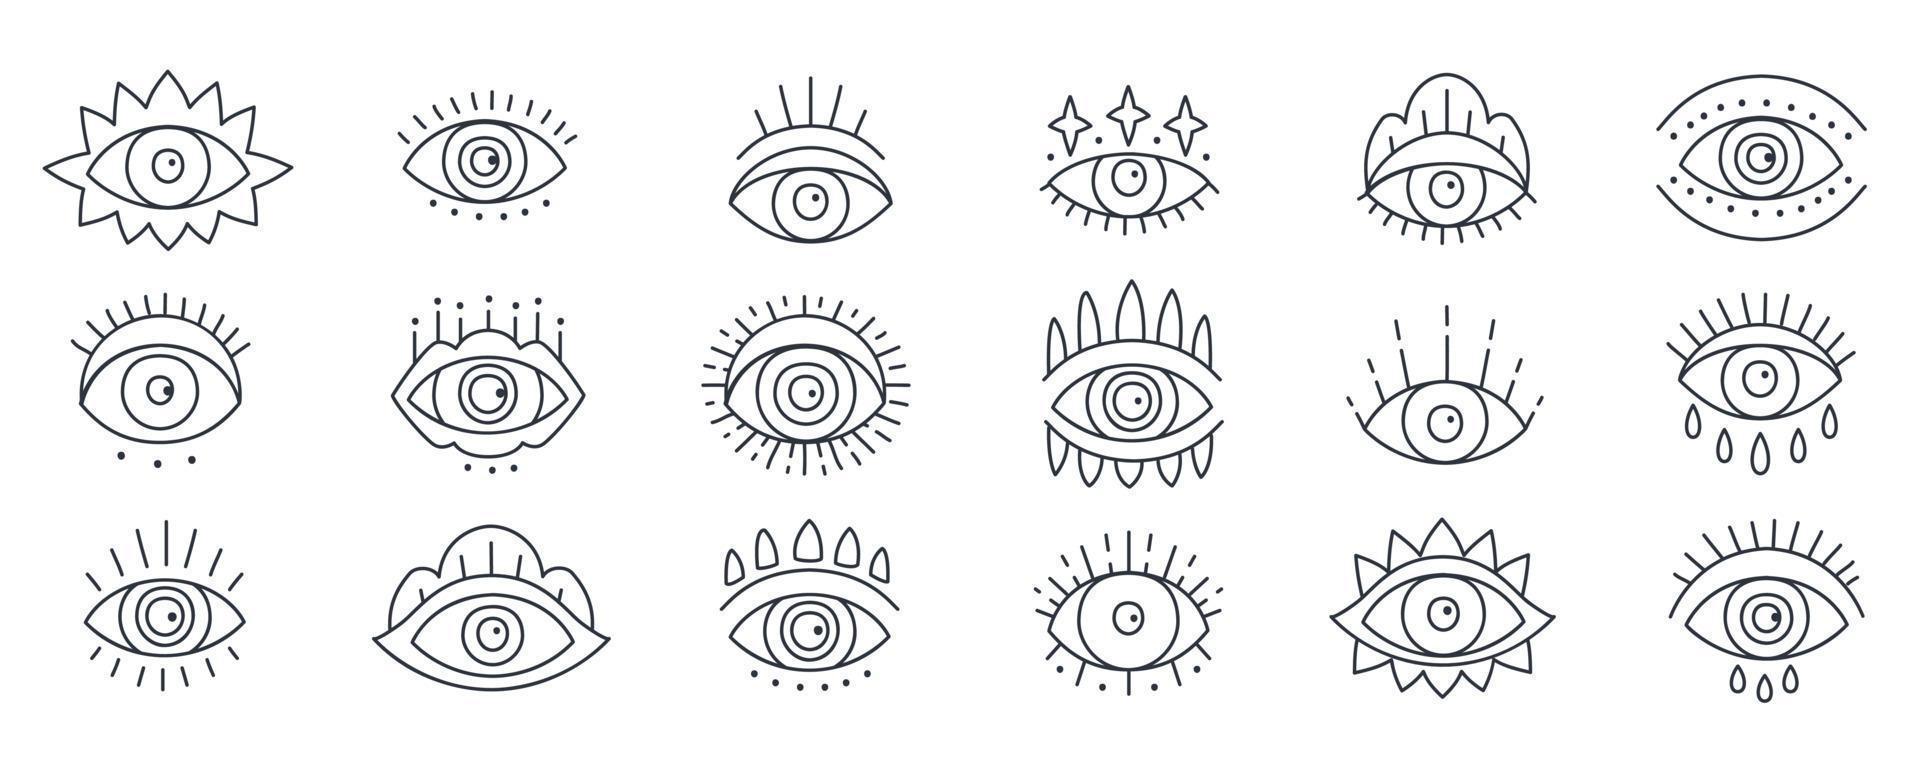 onda magiska doodle eye set i en trendig minimal linjär stil vektor